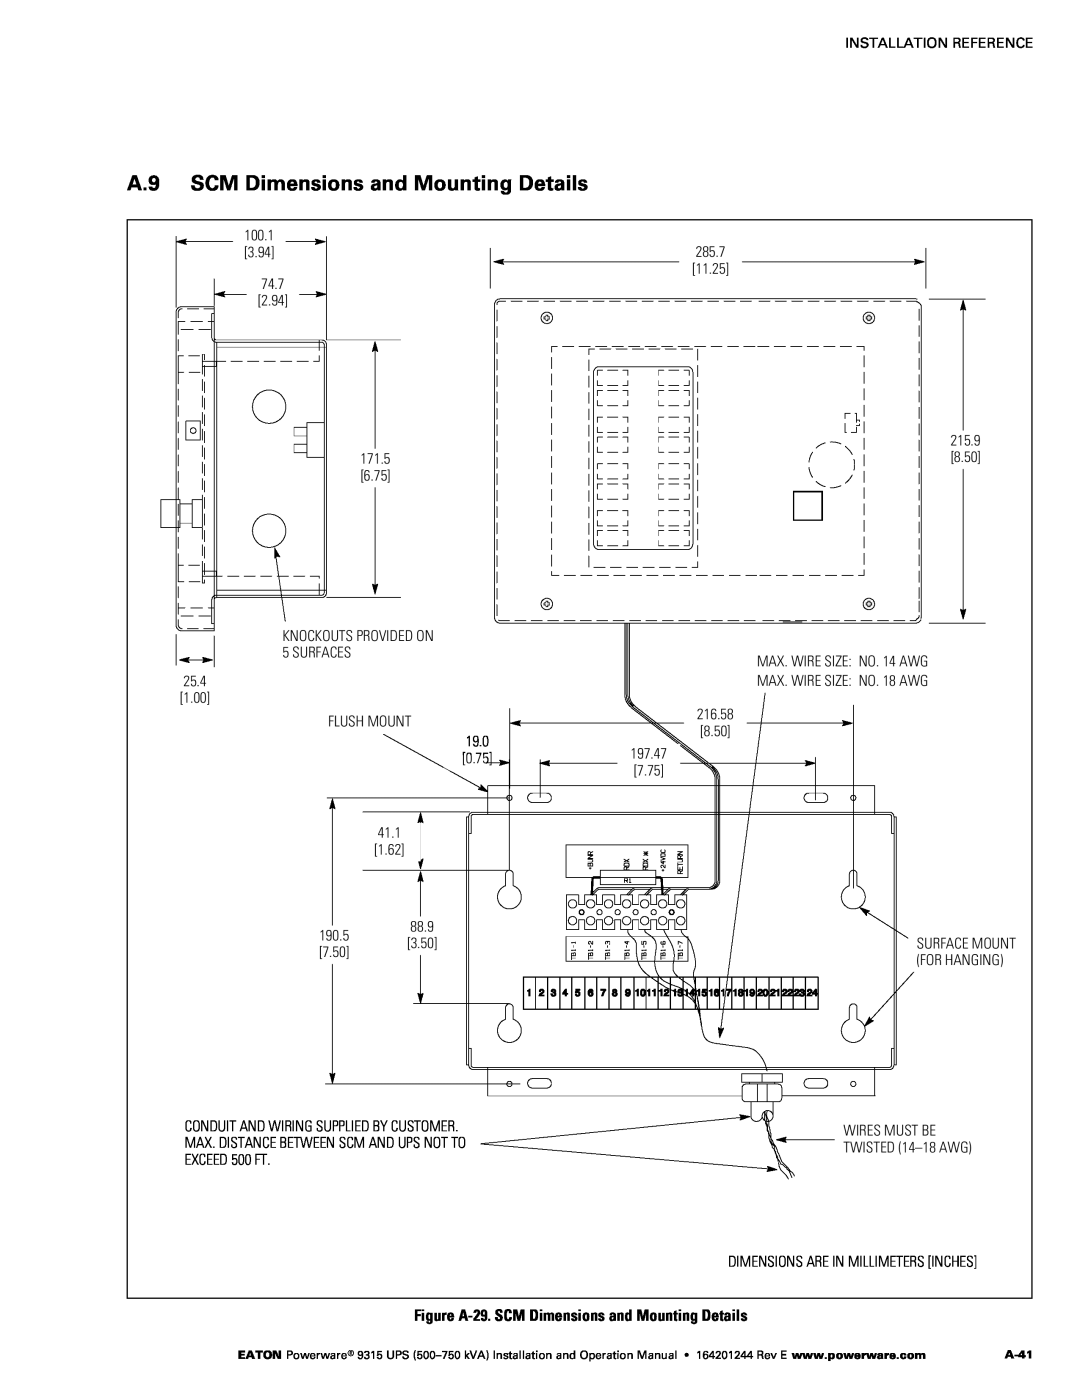 Powerware Powerware 9315 A.9 SCM Dimensions and Mounting Details, 41.11, Figure A‐29. SCM Dimensions and Mounting Details 